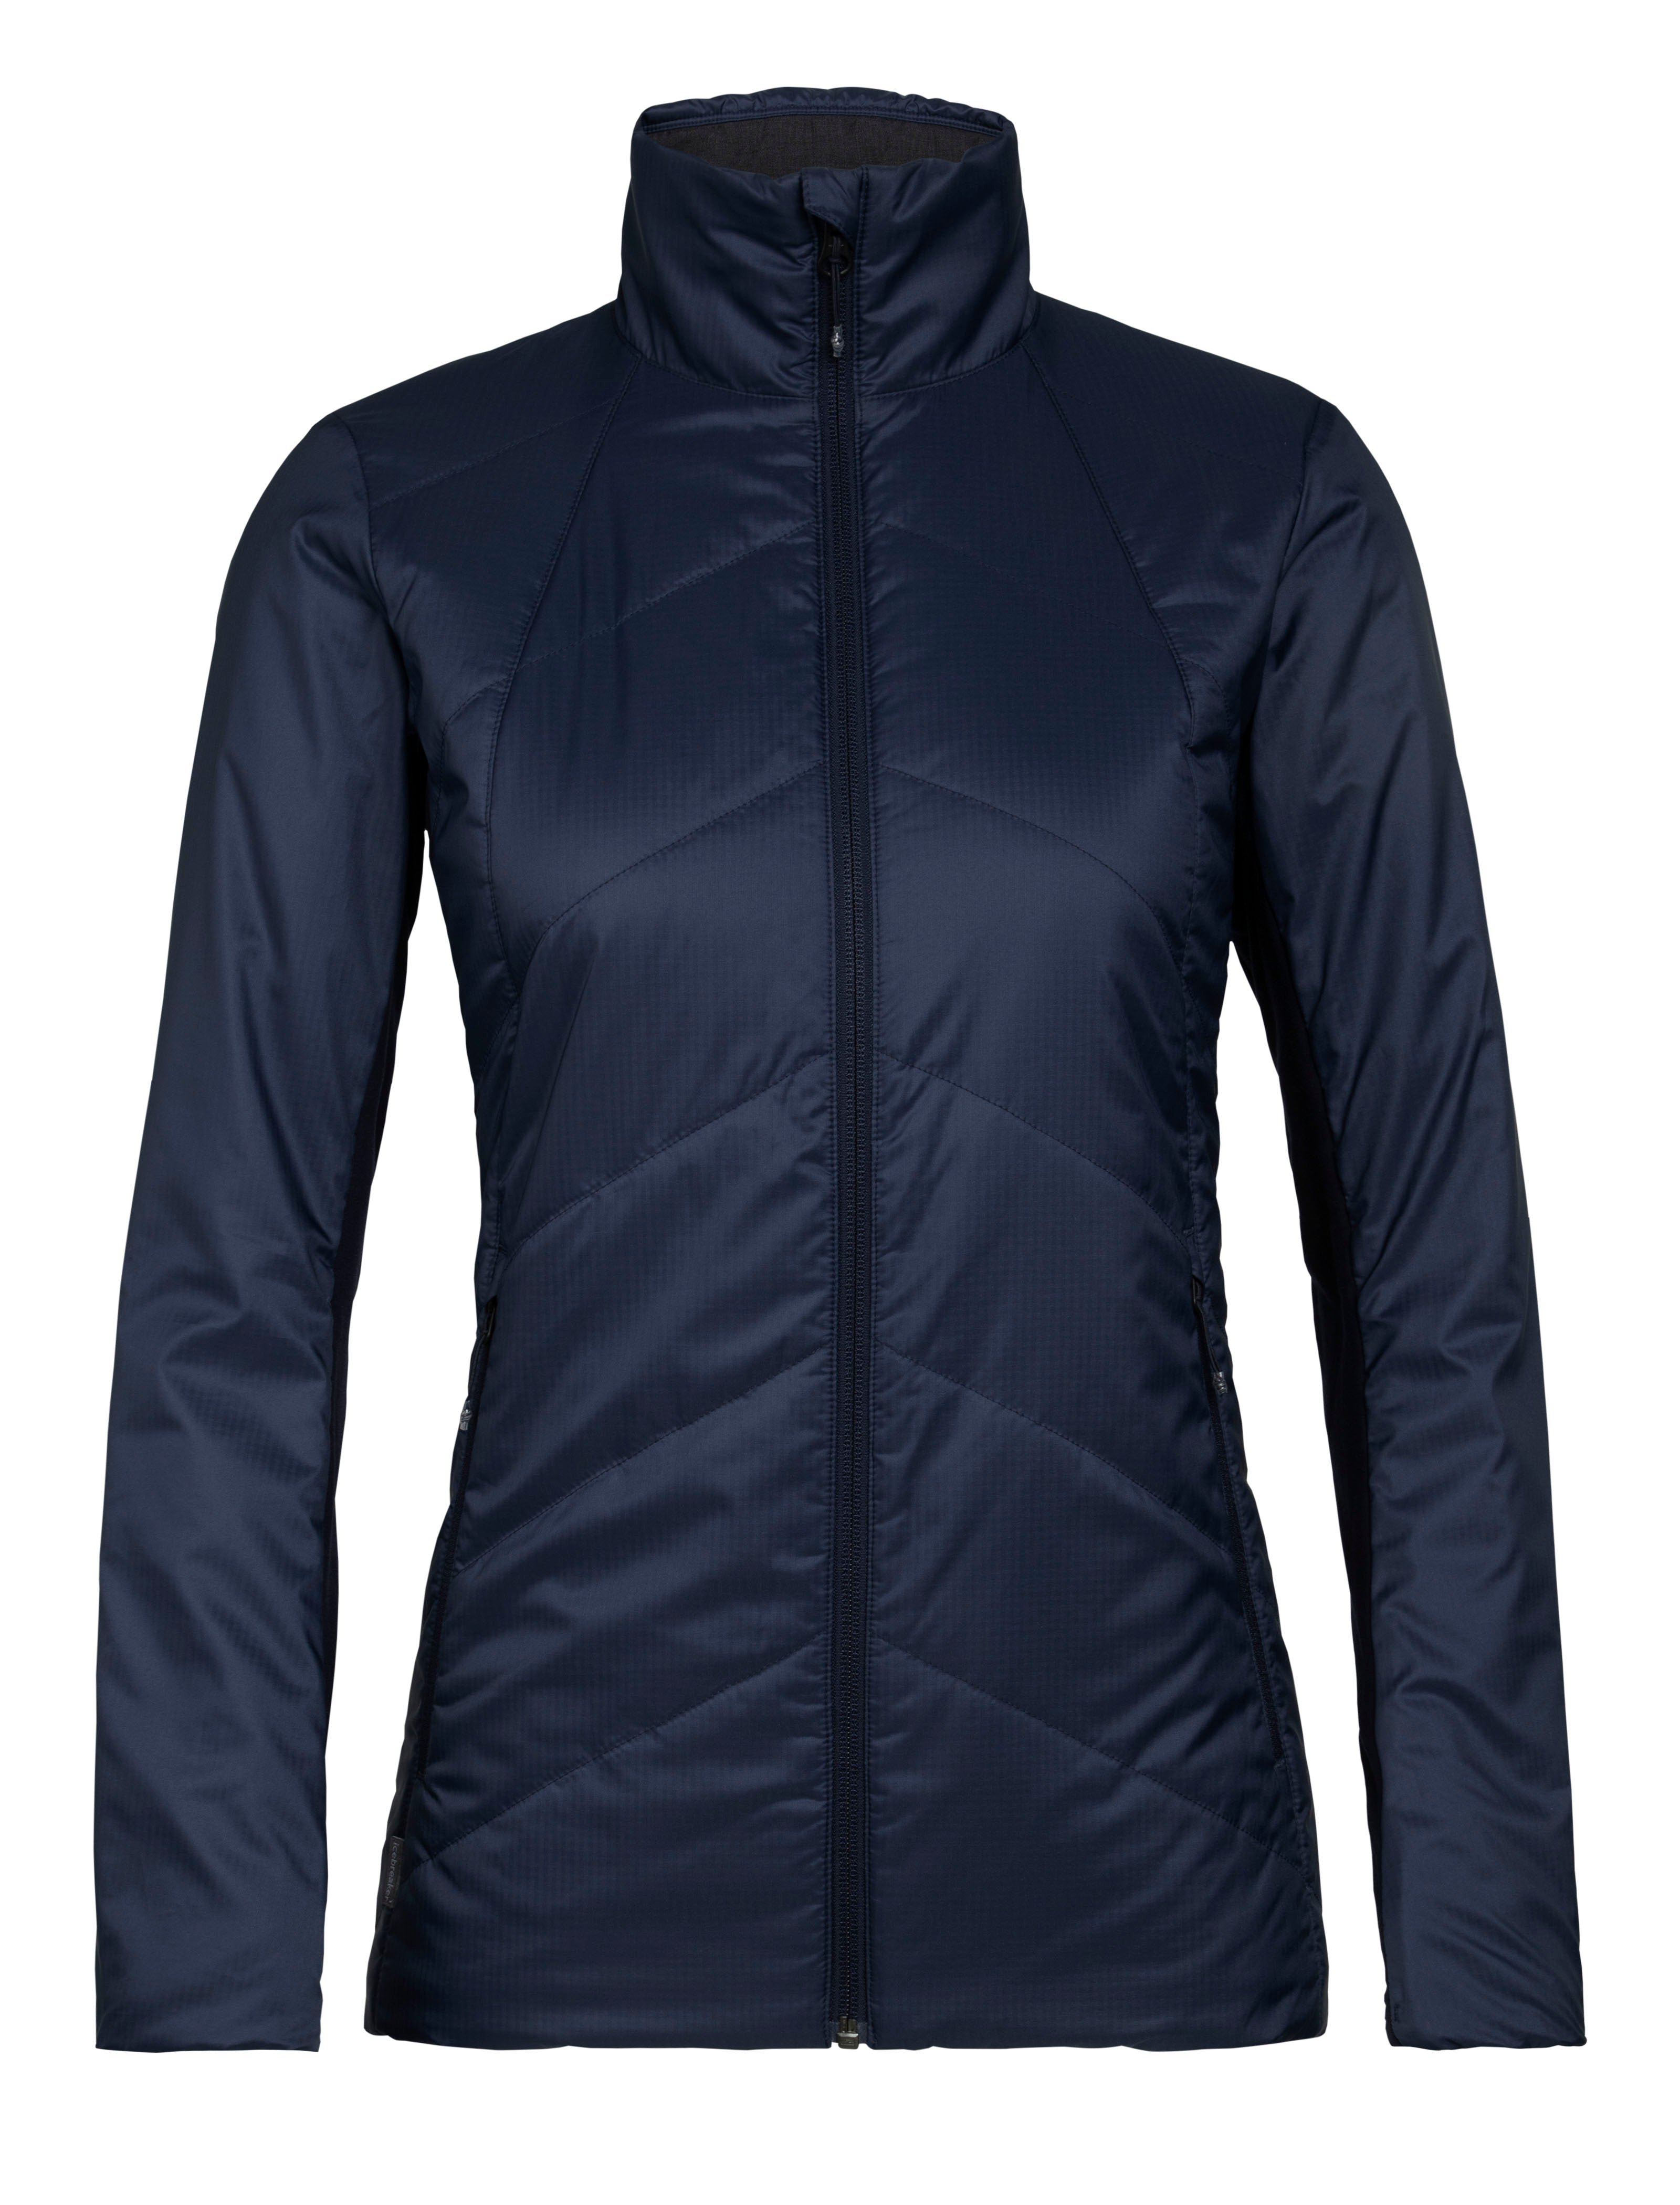 Icebreaker Quantum LS Zip Hood - Merino Jacket Women's | Buy online |  Alpinetrek.co.uk